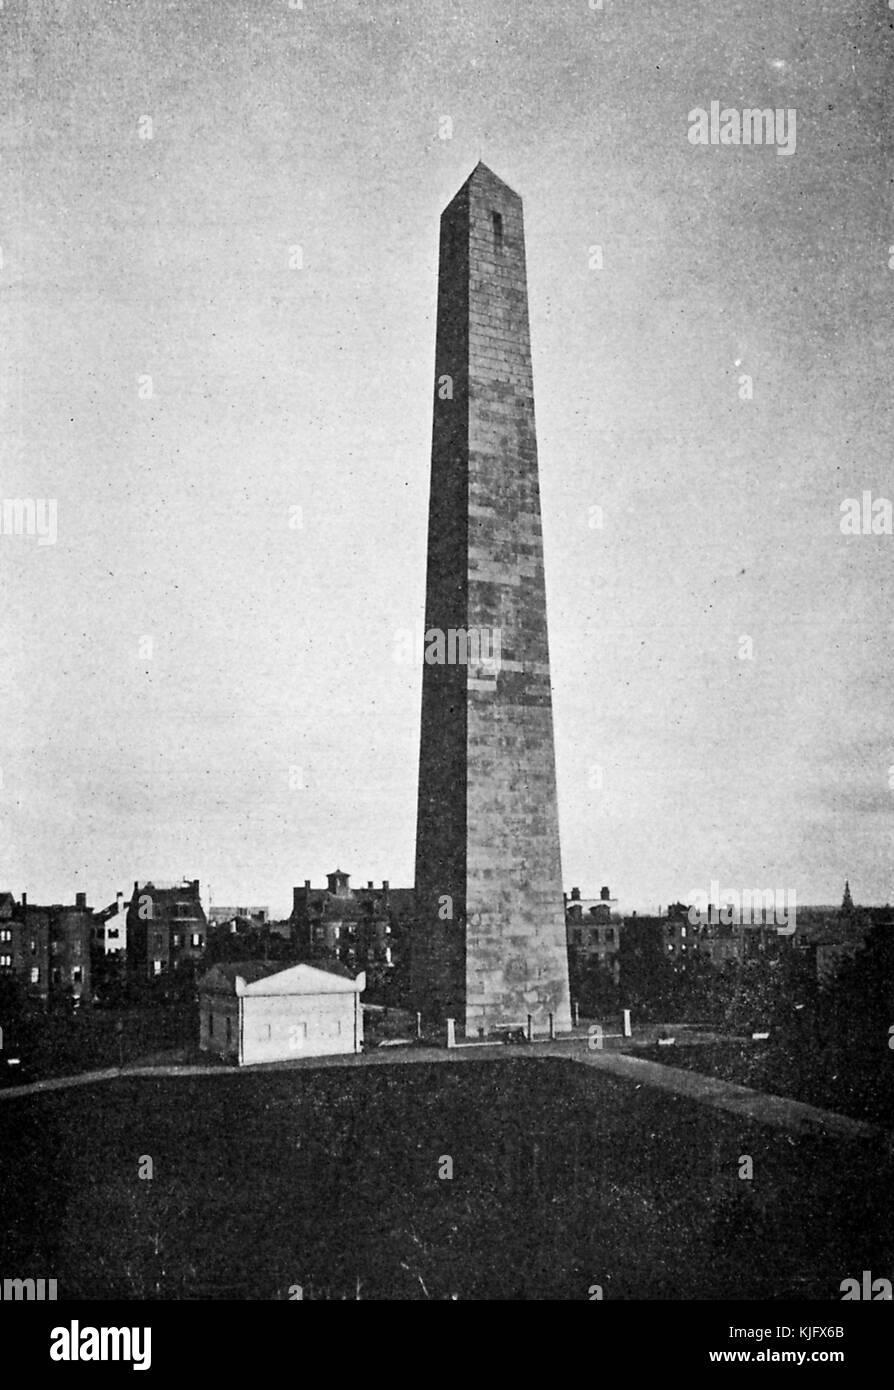 Ein Foto des Bunker Hill Monument, der Granit Obelisk wurde 1827 begonnen und 1843 fertiggestellt, Es steht bei 221 Fuß hoch und wurde als Erinnerung an die Schlacht von Bunker Hill, die die erste große Schlacht zwischen den Briten und den Patrioten im amerikanischen Revolutionary war, Boston, Massachusetts, 1905 gebaut. Stockfoto